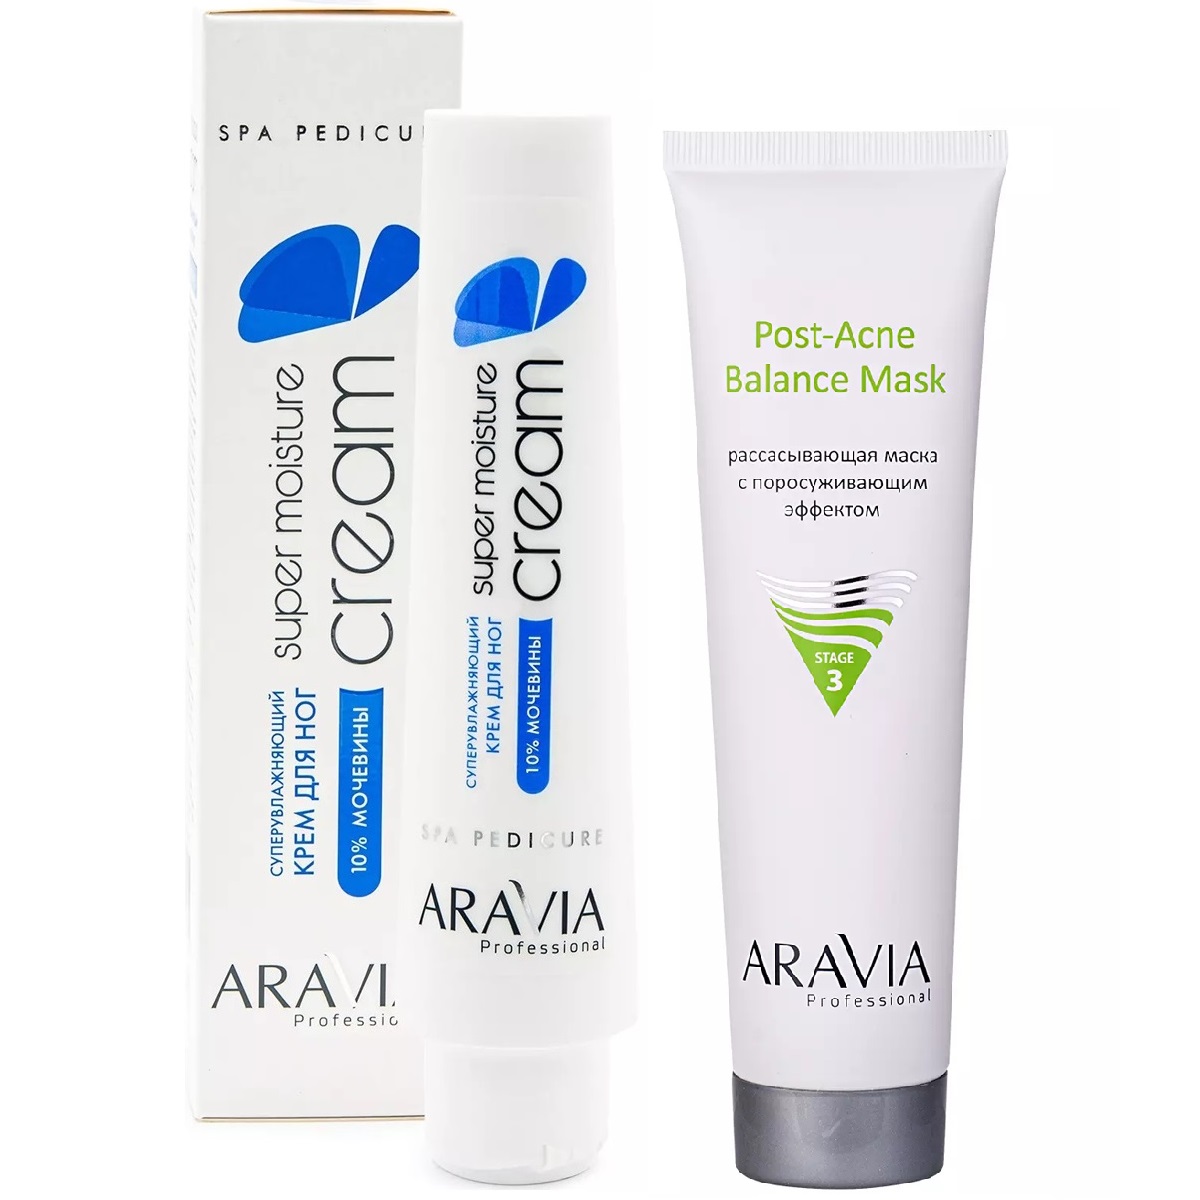 Aravia Professional Набор бестселлеров: маска, 100 мл + суперувлажняющий крем для ног, 100 мл (Aravia Professional, Уход за лицом) маска для лица plazan крем маска для жирной и проблемной кожи